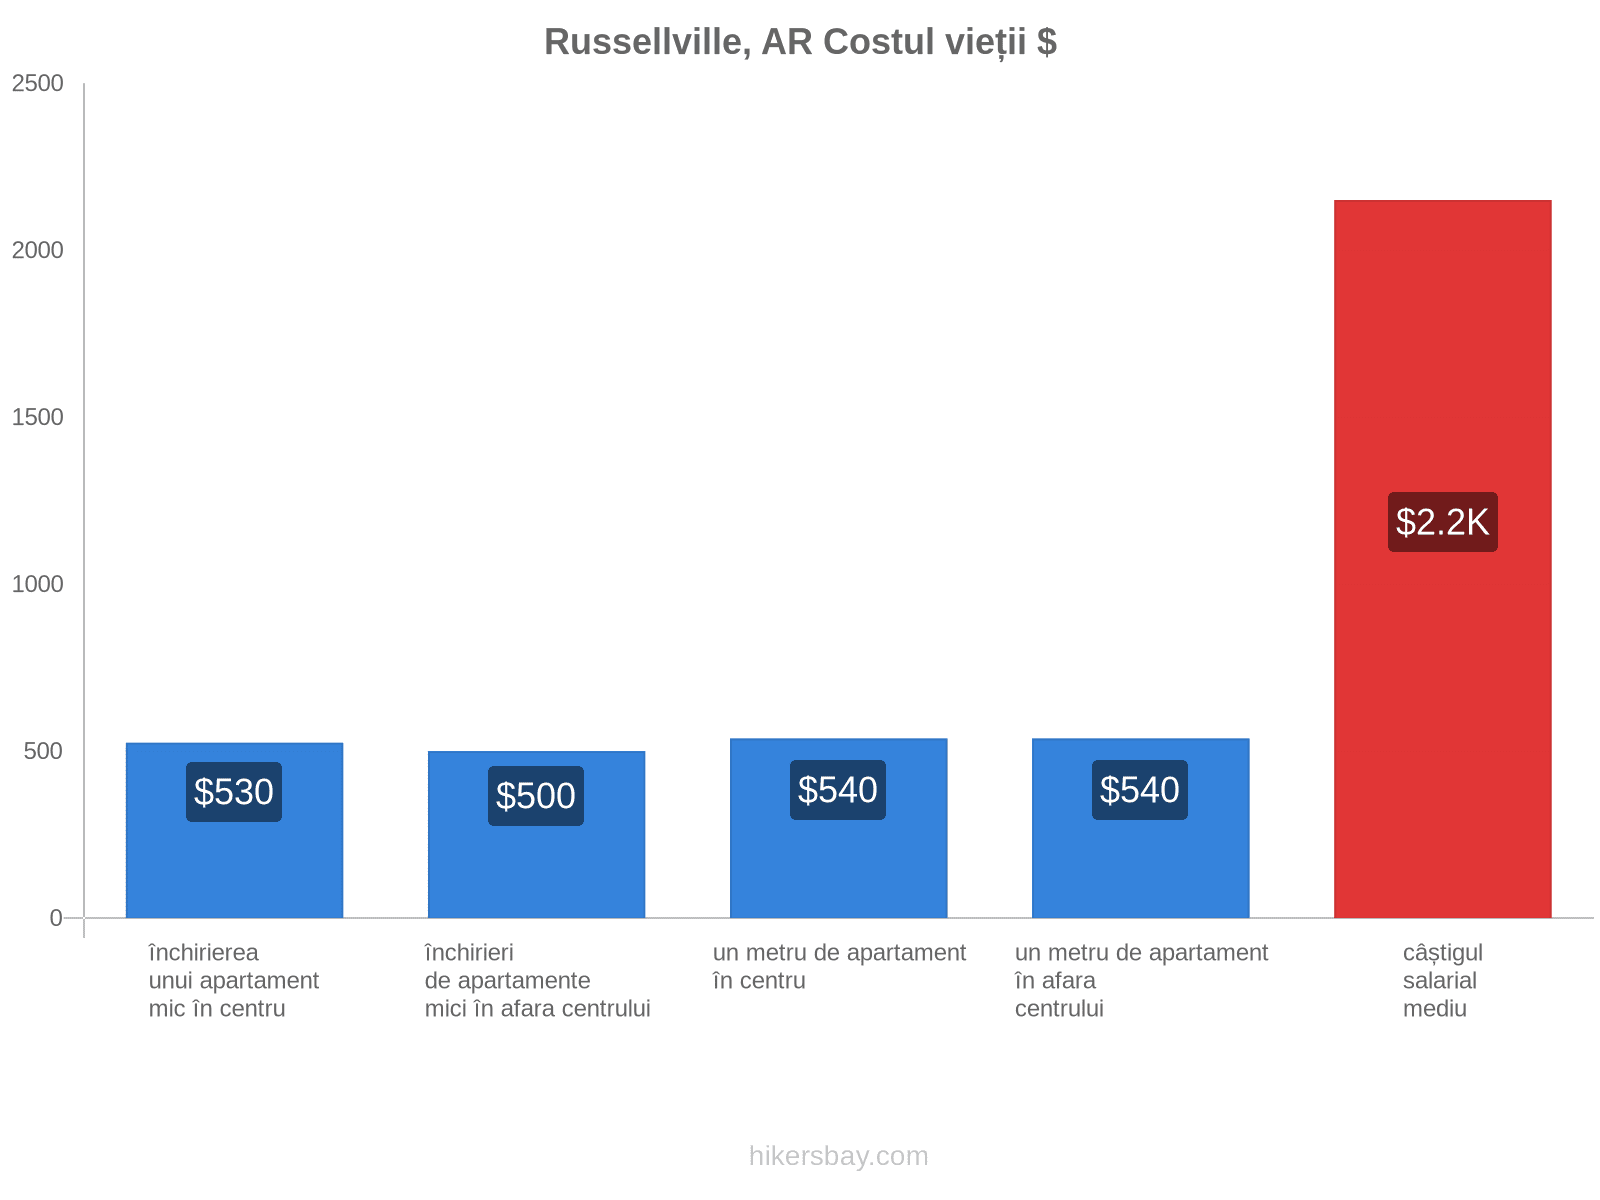 Russellville, AR costul vieții hikersbay.com